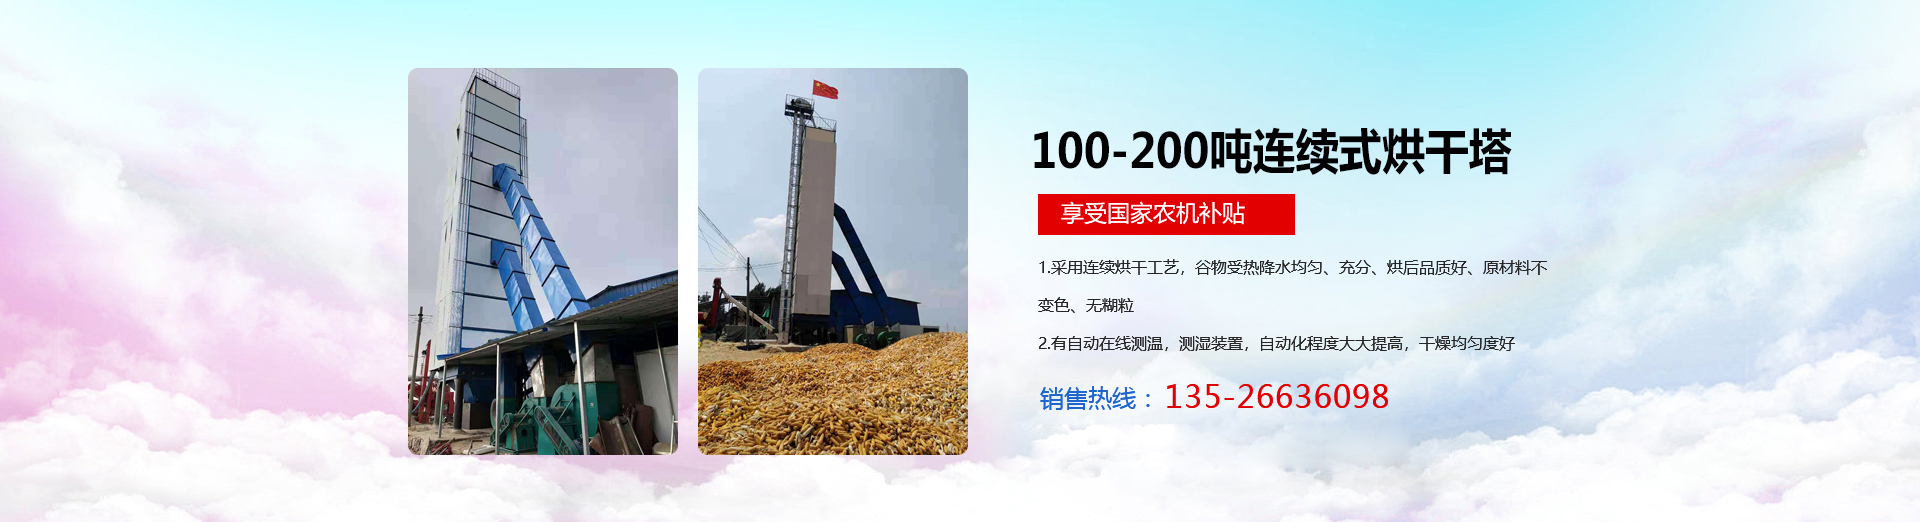 河南省康农农业机械有限公司